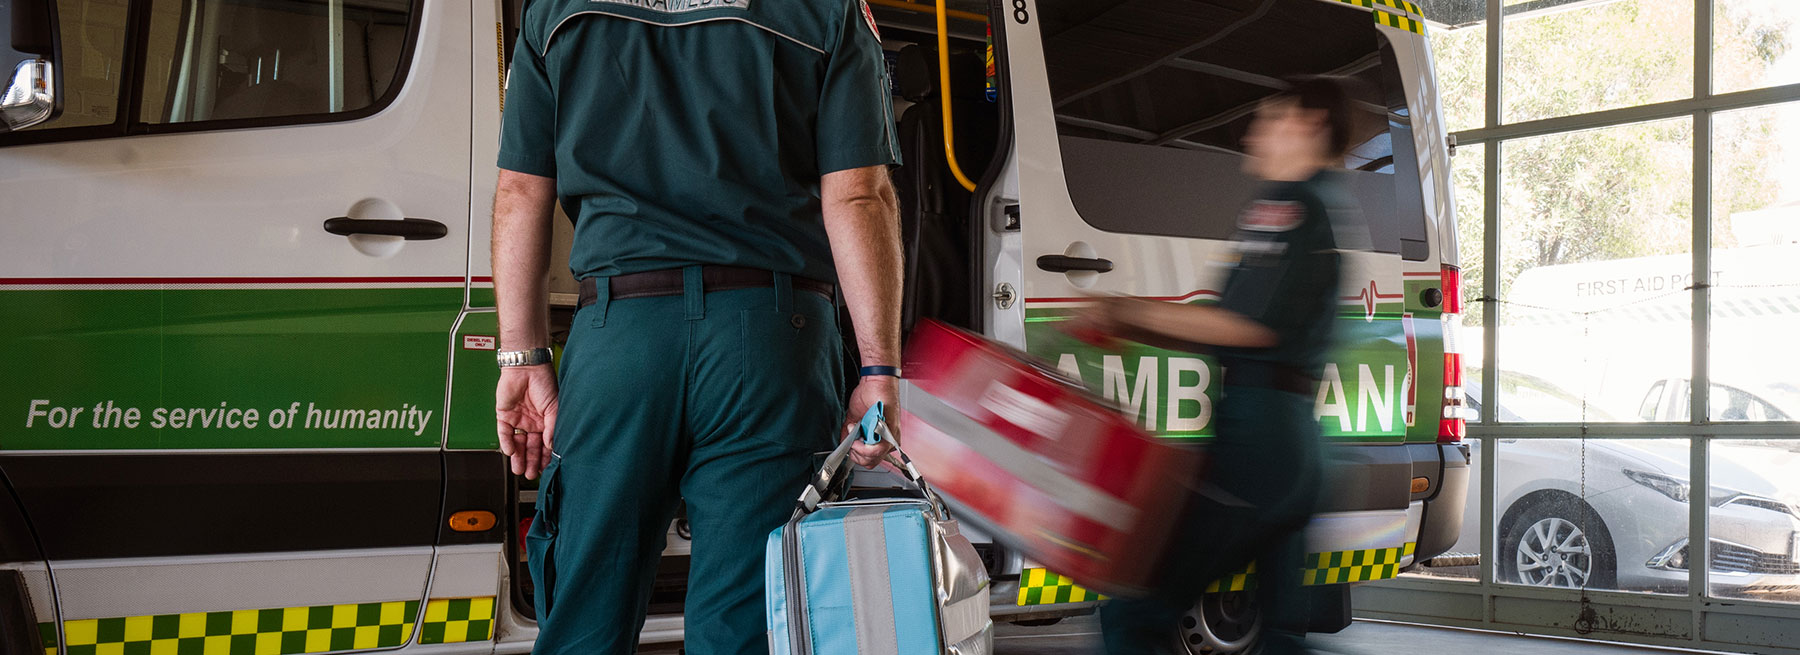 St John Ambulance customer story